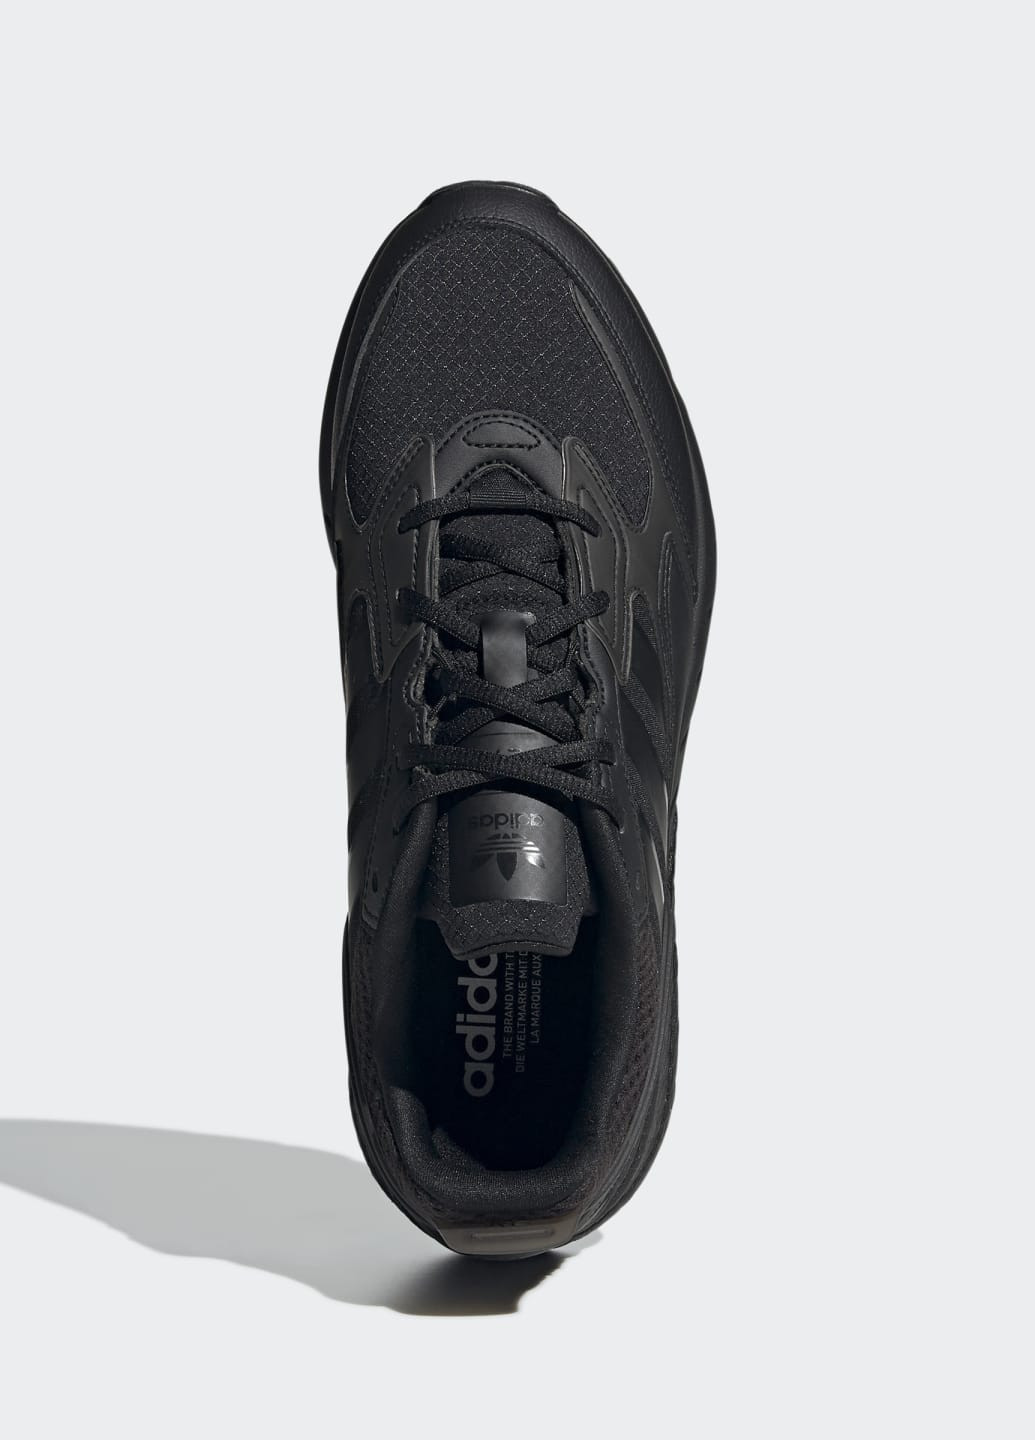 Черные всесезонные кроссовки zx 1k boost 2.0 adidas